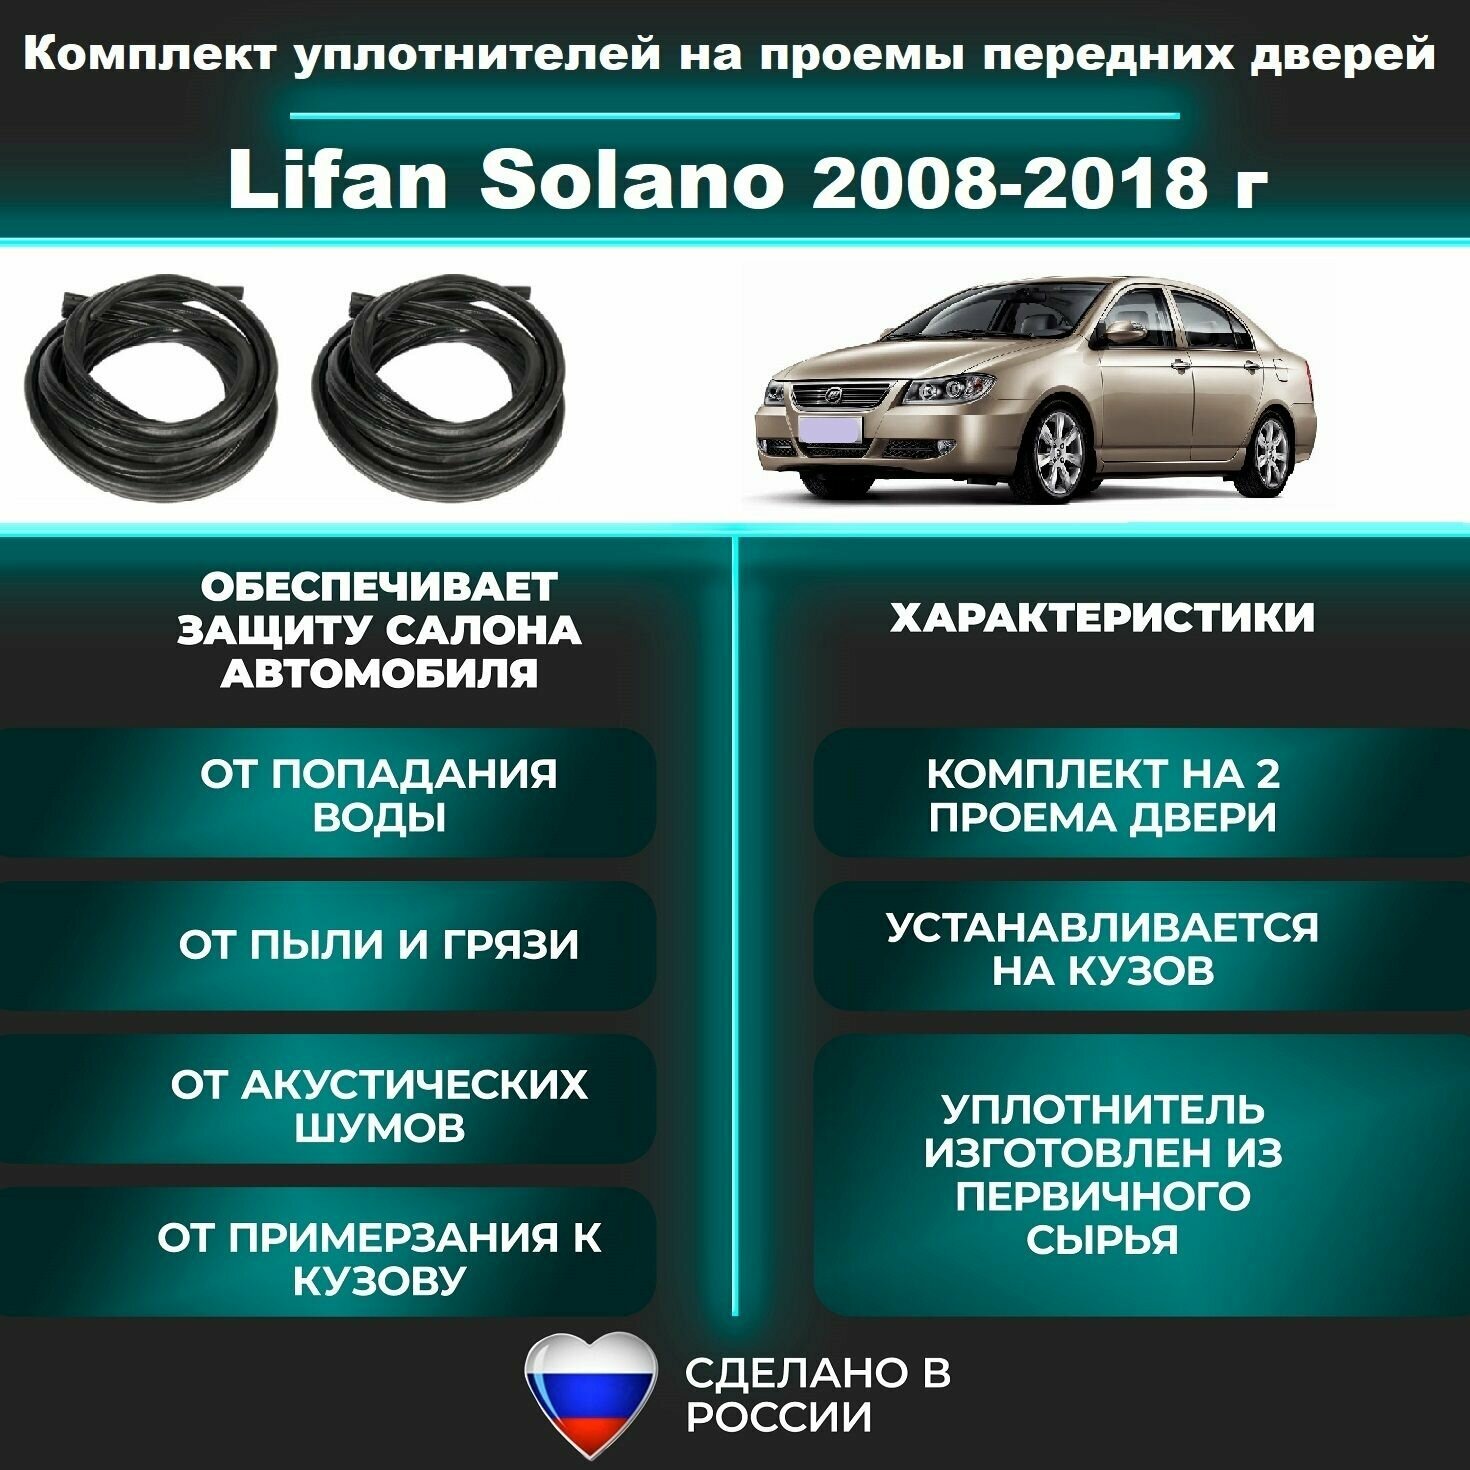 Комплект уплотнителей проема передних дверей подходит на Lifan Solano 620/630/650 2008-2018 г Лифан Солано 2 шт